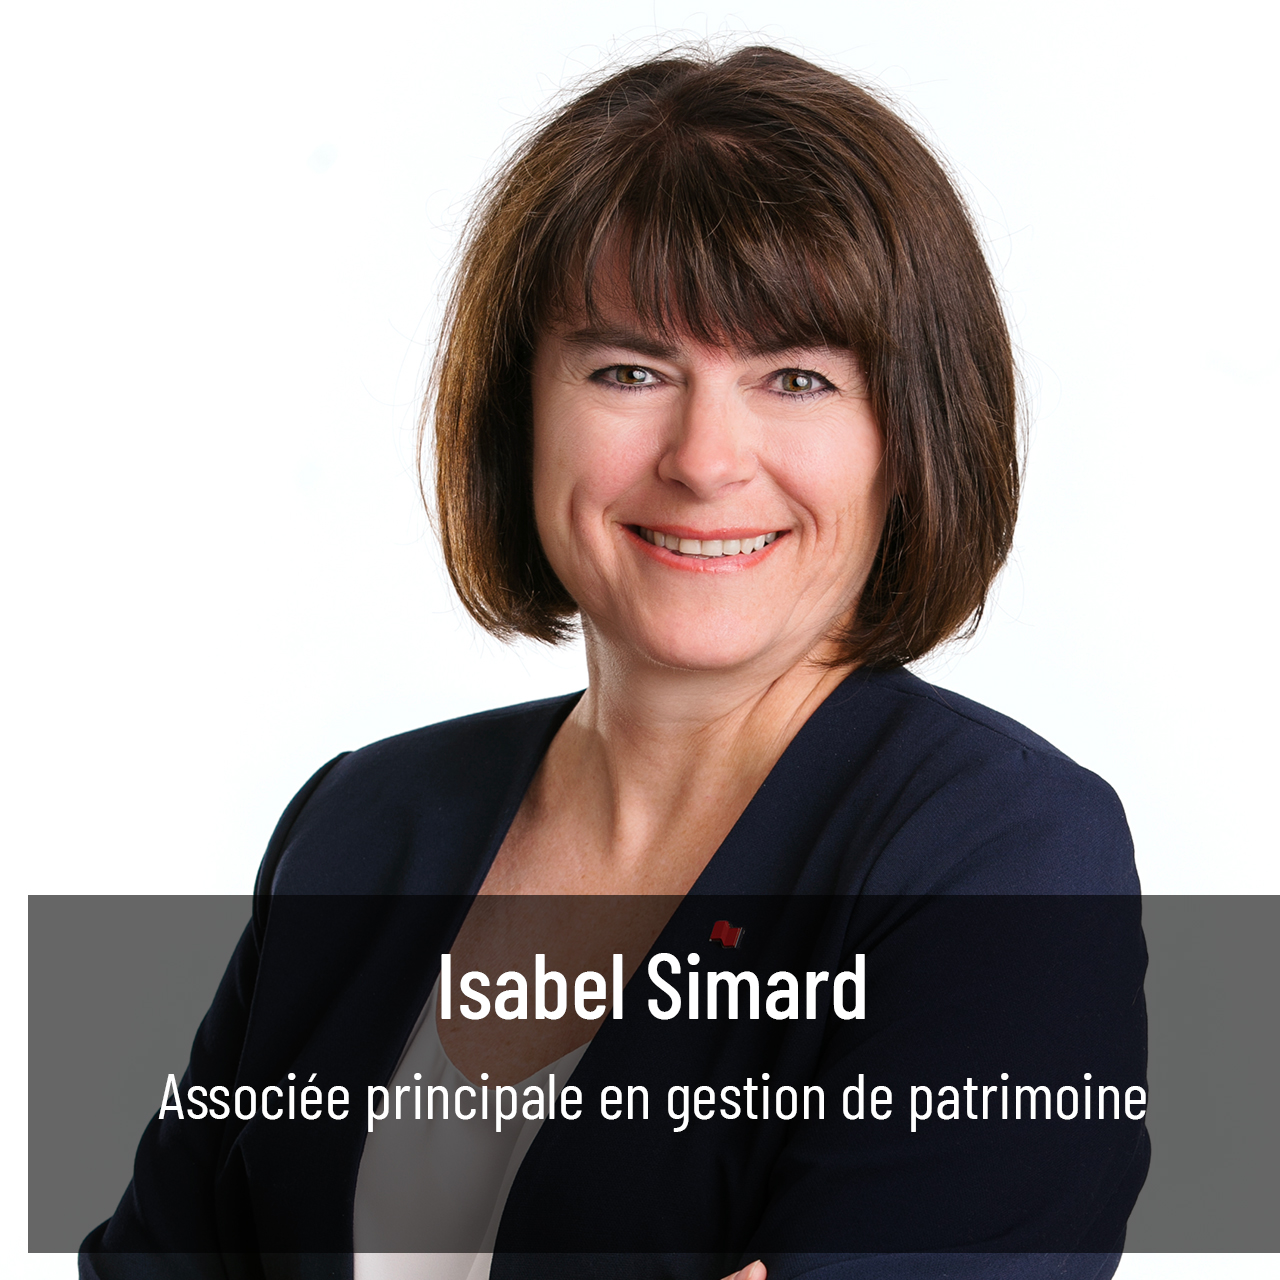 Isabel Simard